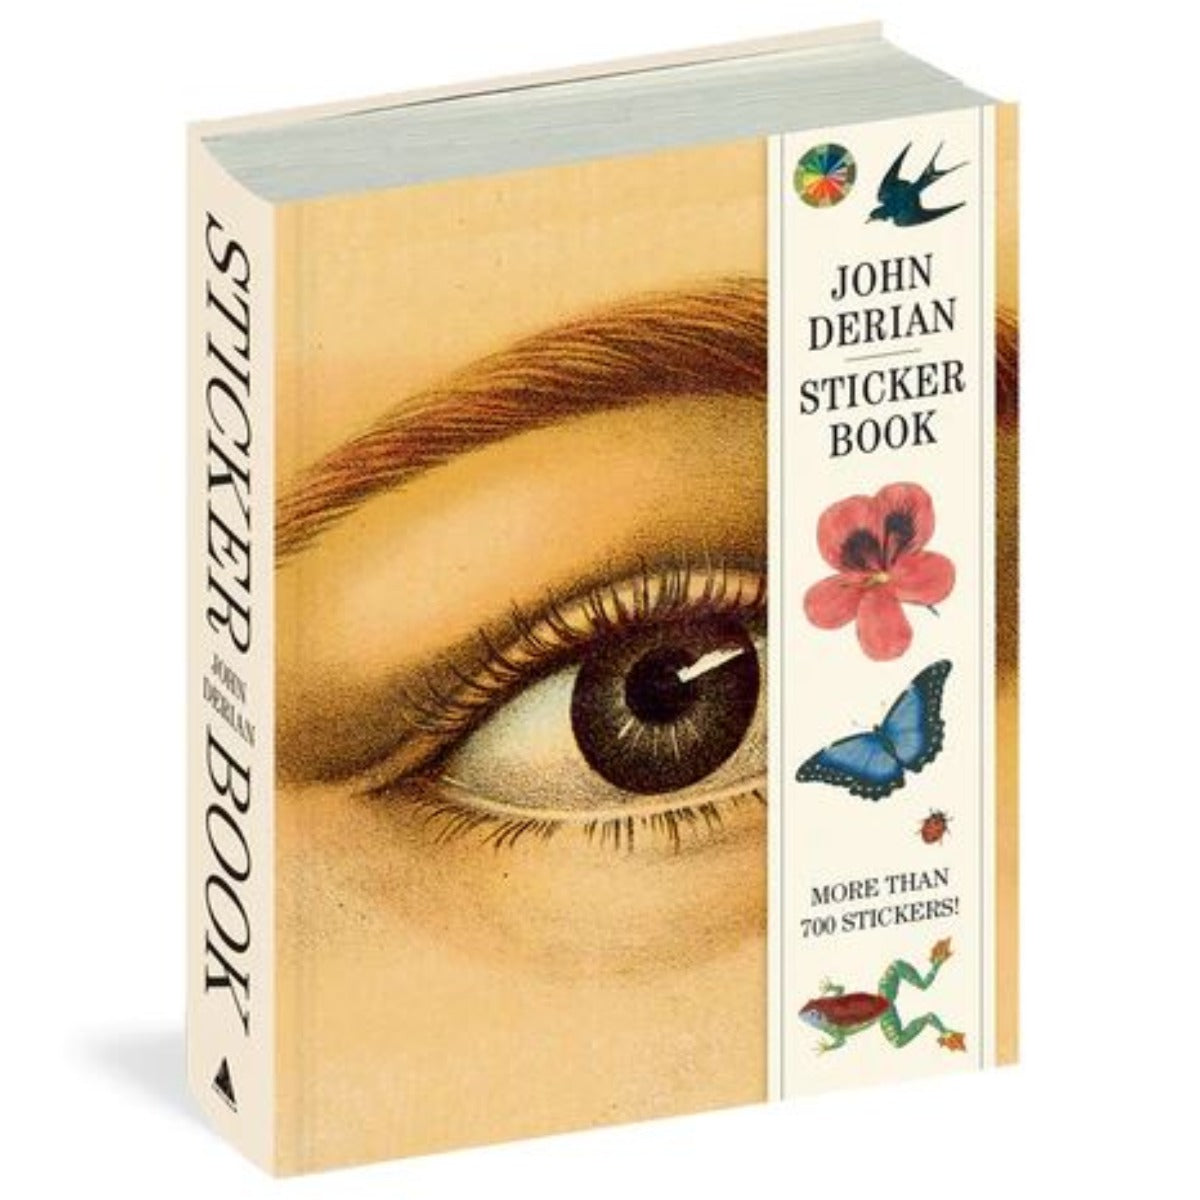 The John Derian Sticker Book